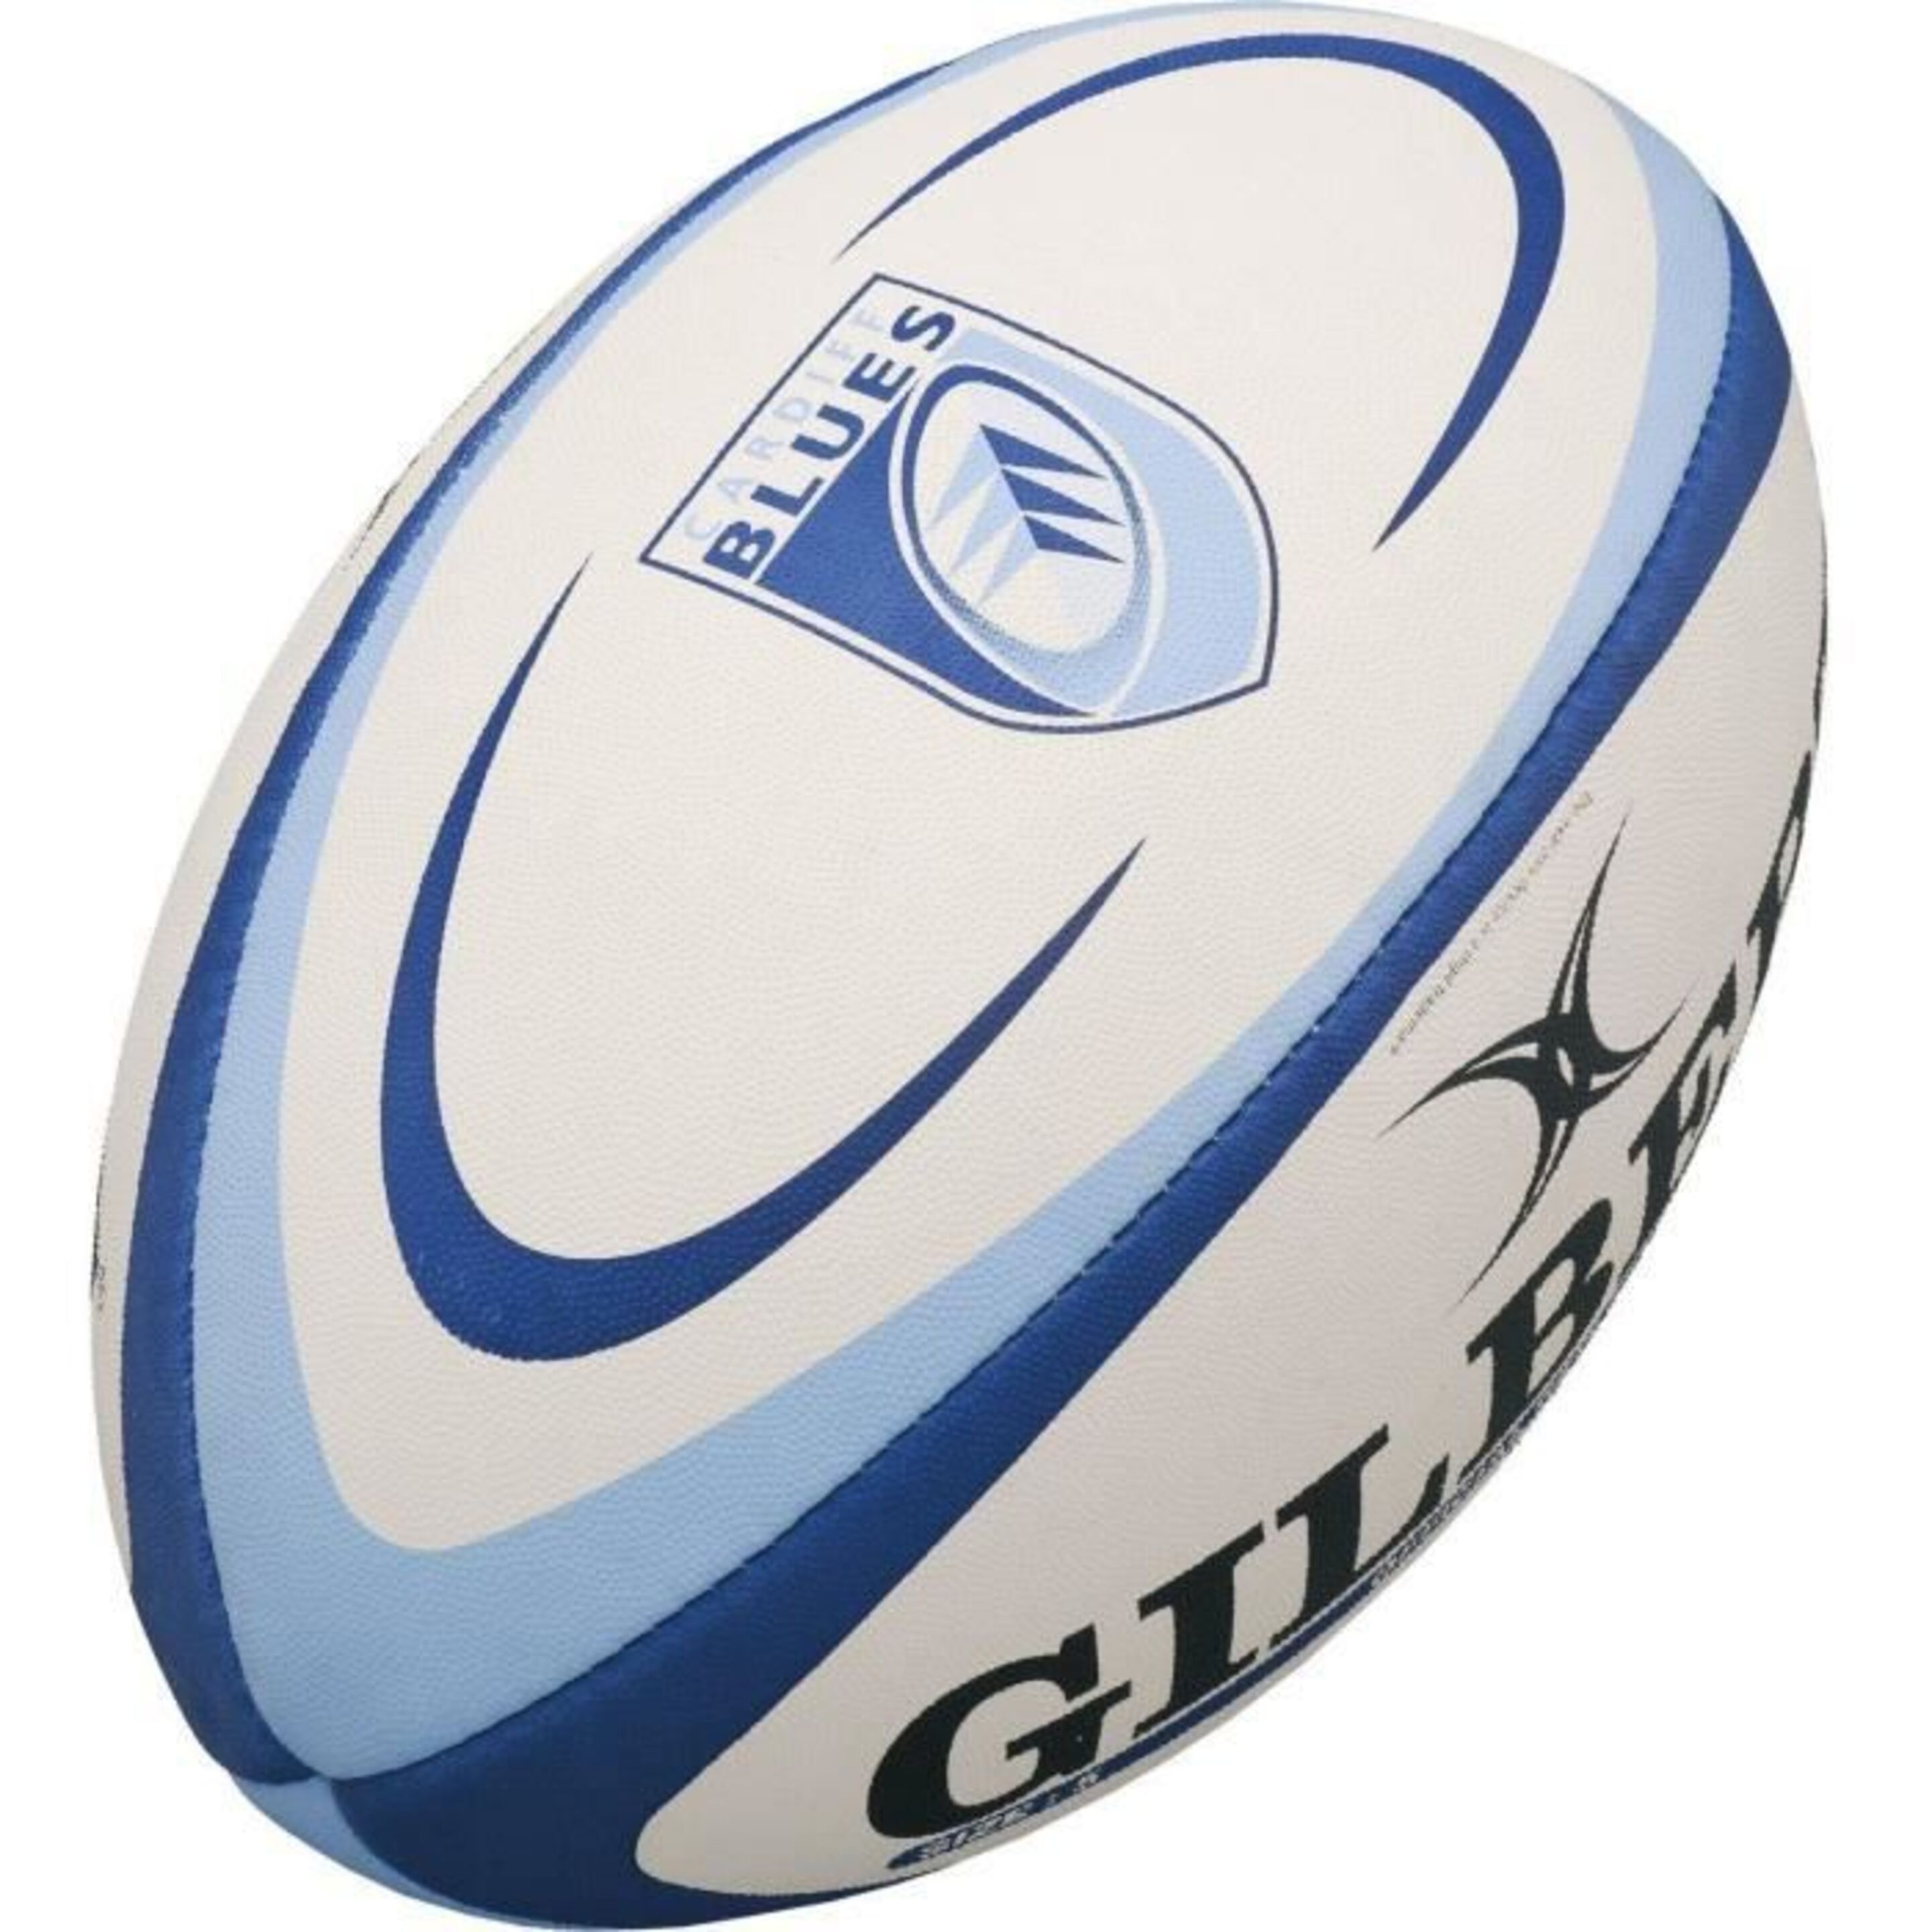 Balón De Rugby Gilbert Réplica Cardiff - Blanco/Azul  MKP